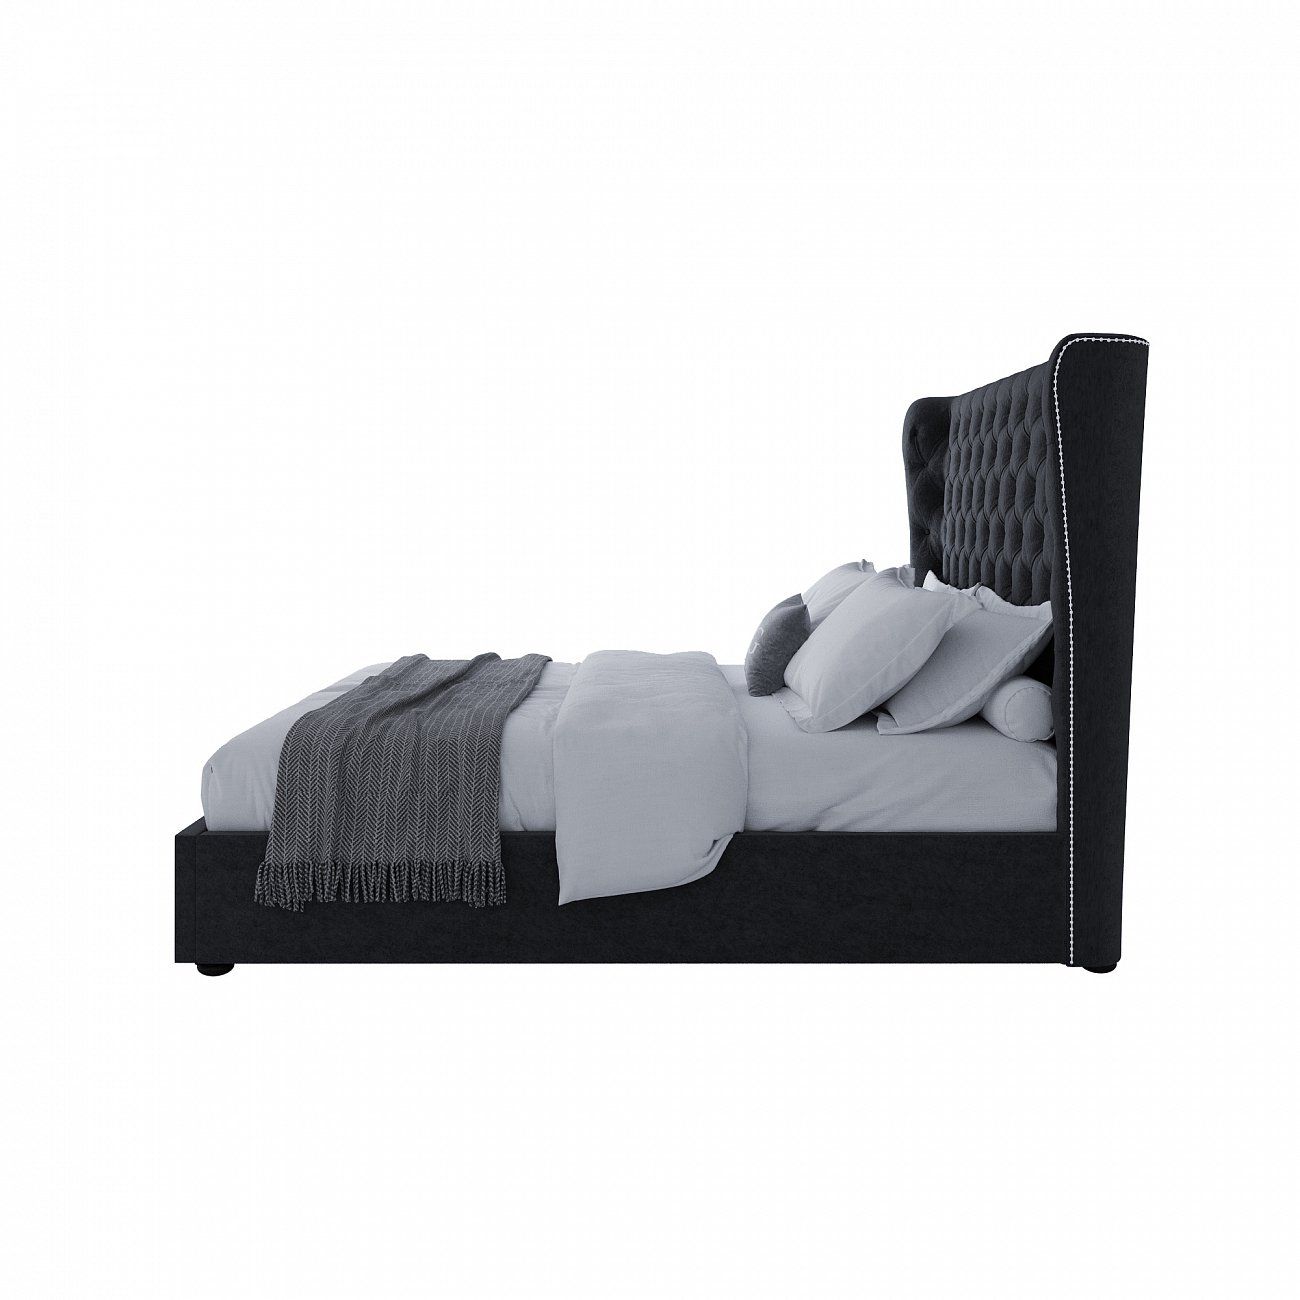 Кровать двуспальная с прямым мягким изголовьем 180х200 см антрацит Henbord